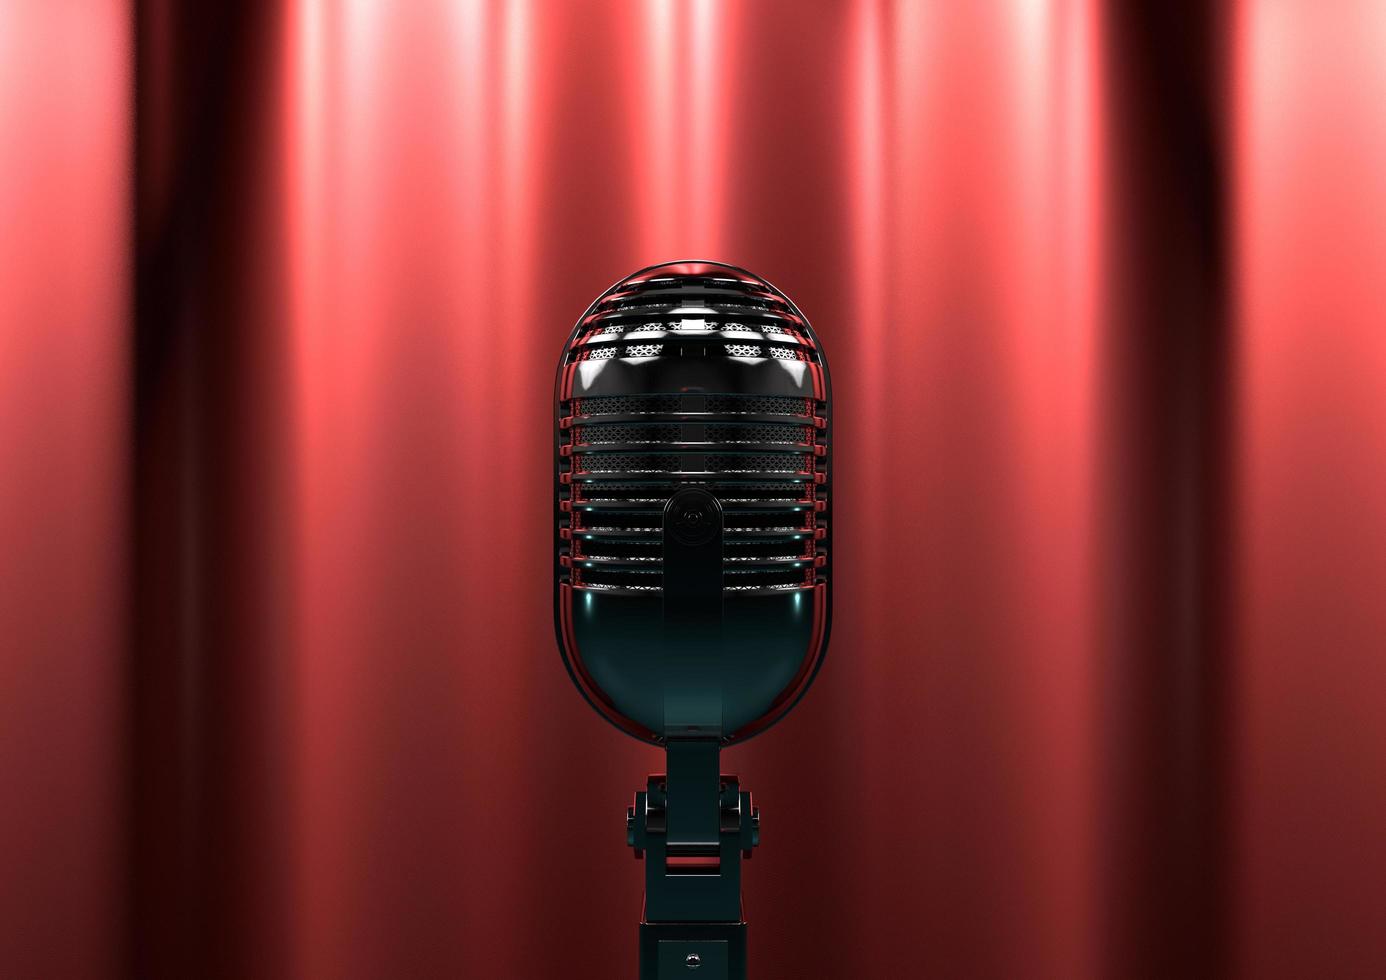 vintage microfoon op het podium met rode gordijnen. humeurige toneelverlichting zorgt voor drama en spanning. foto